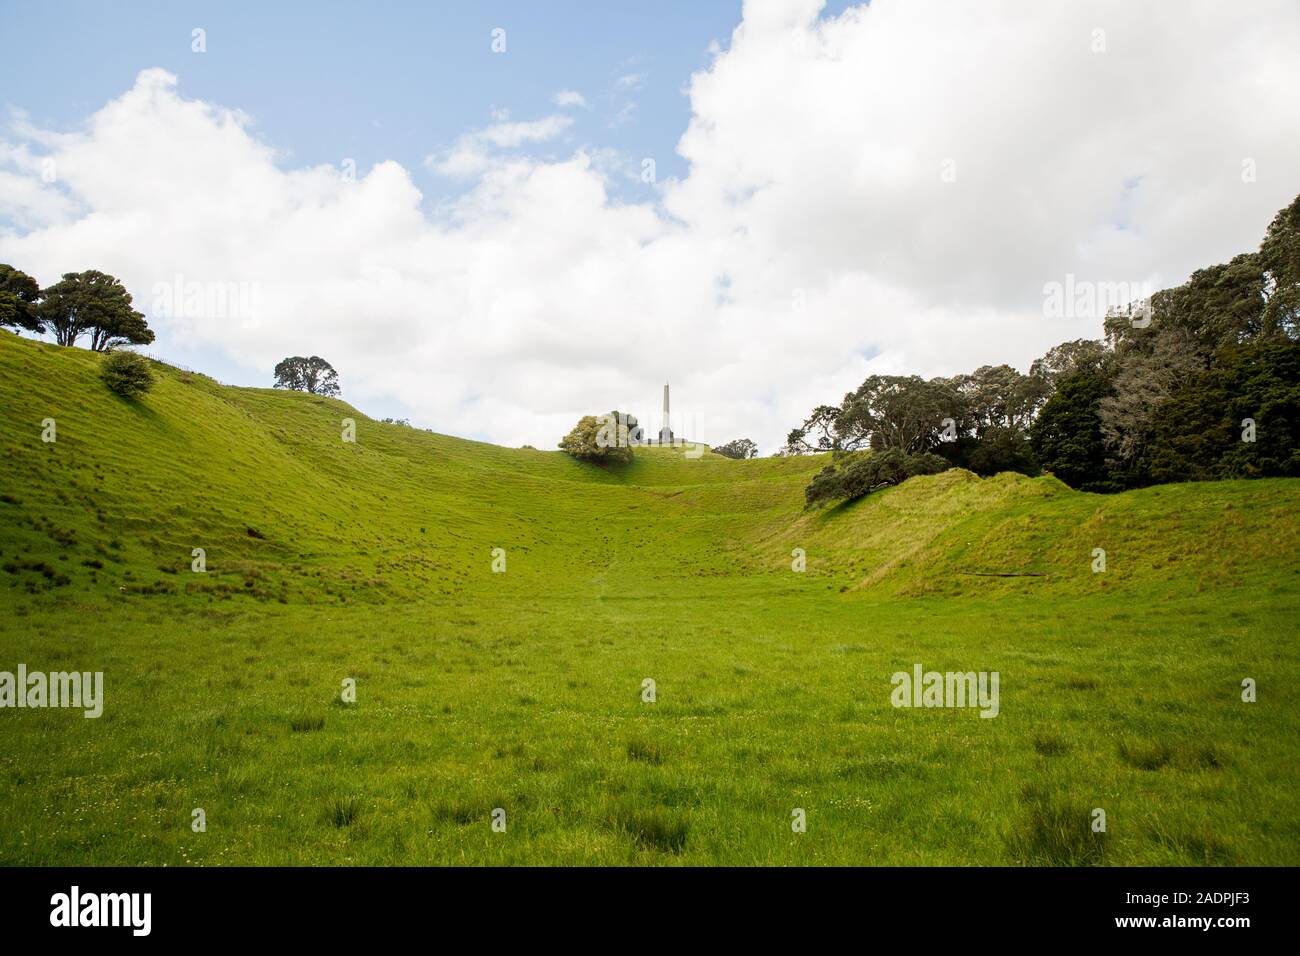 Imagen de paisaje de One Tree Hill ubicada en Cornwall Park de la ciudad de Auckland, Nueva Zelanda. Foto de stock